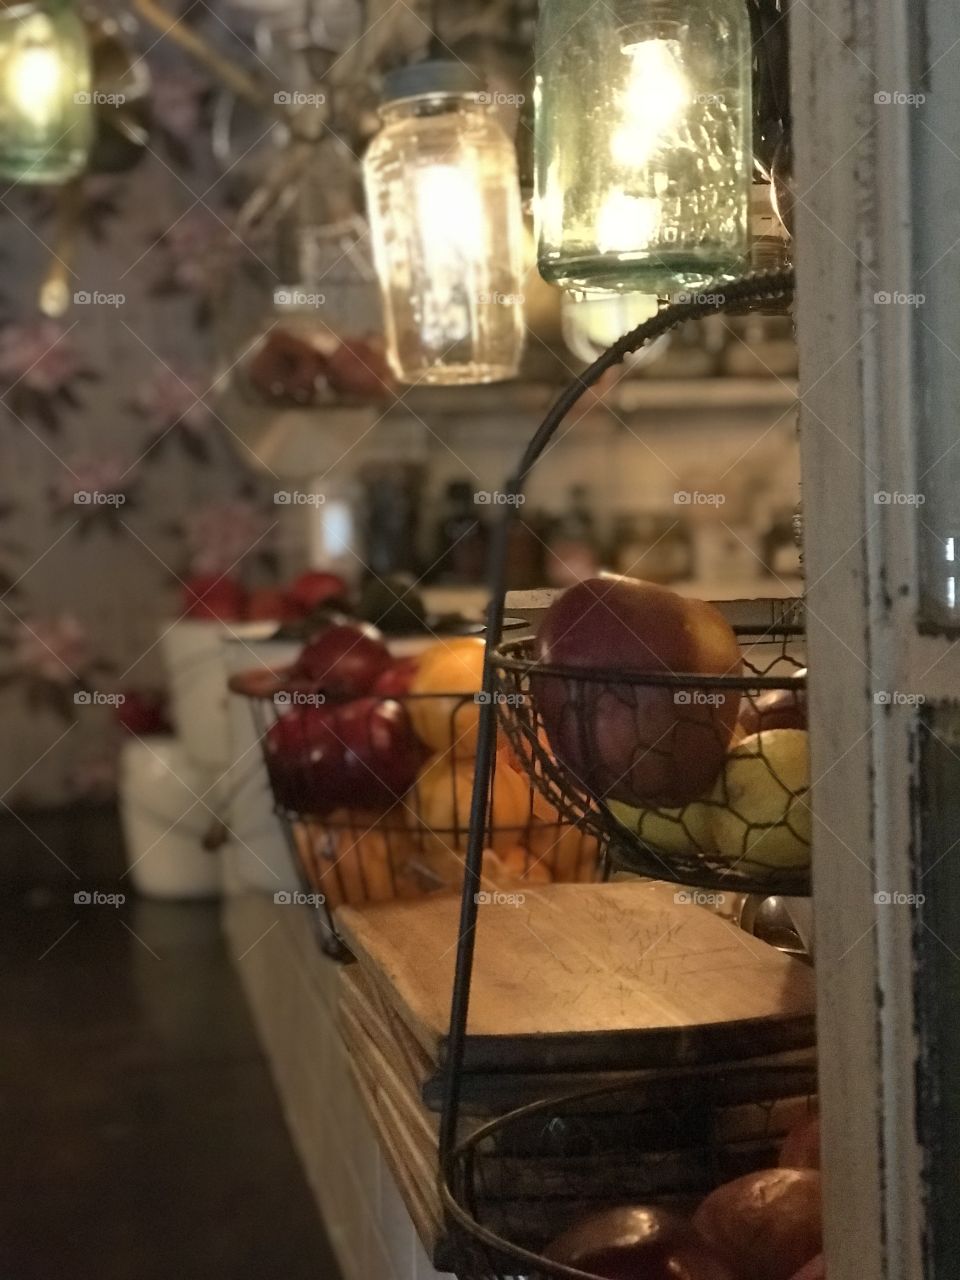 Fruit in restaurant kitchen 